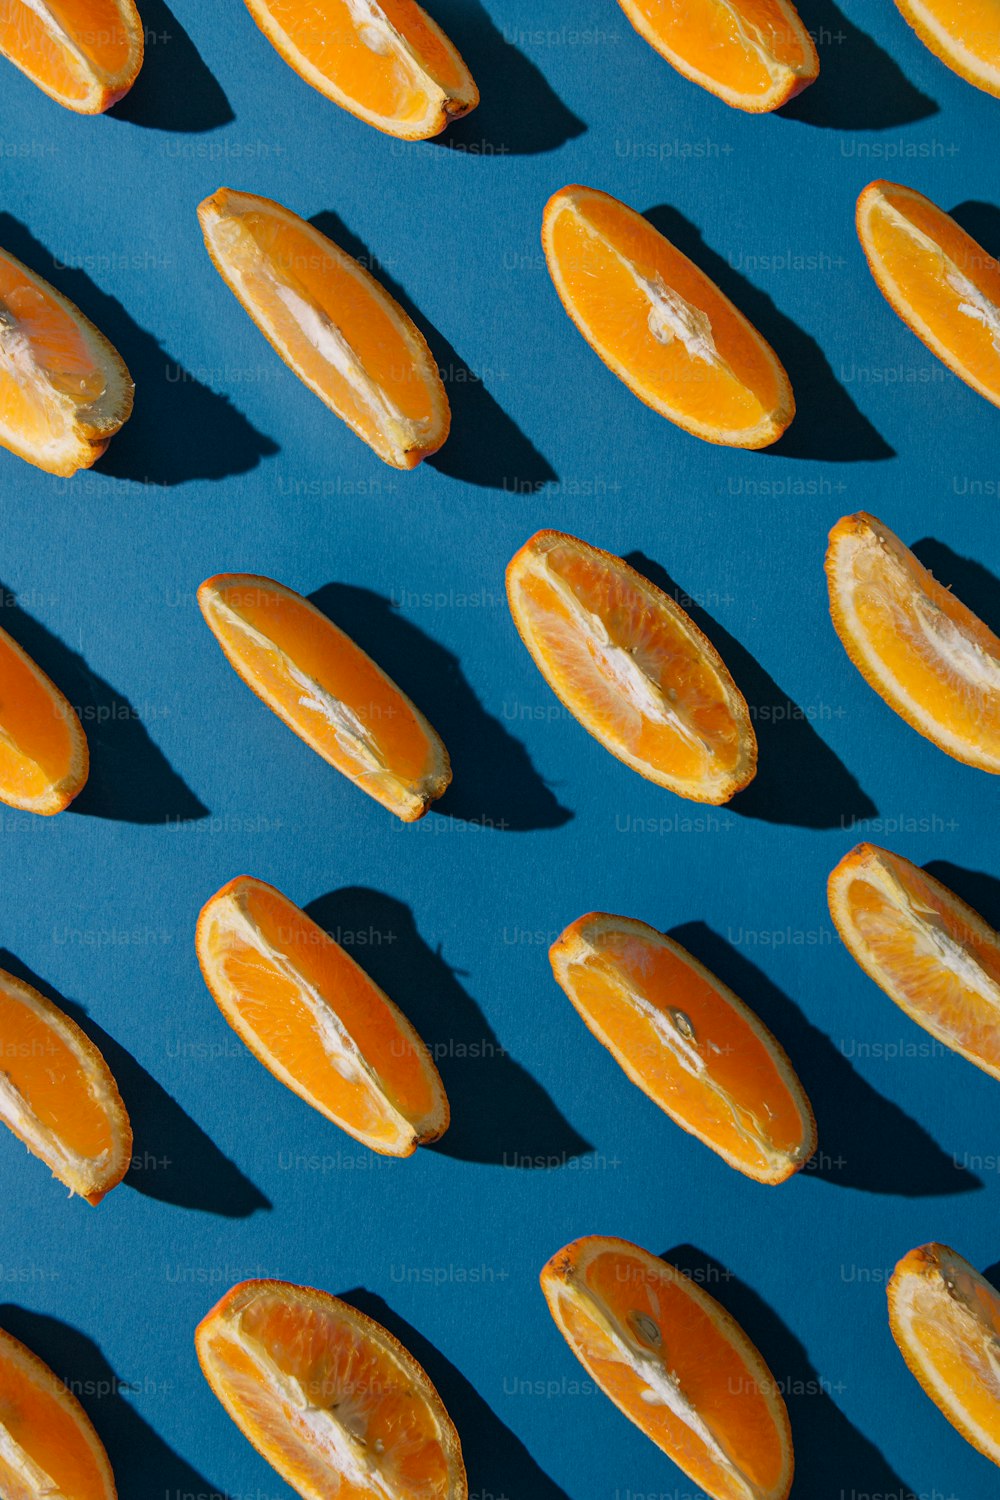 Hình ảnh cá cam miễn phí: Cá cam là một loại cá rất đẹp và được coi là may mắn trong văn hóa Việt Nam. Công ty chúng tôi tự hào giới thiệu bộ sưu tập hình ảnh cá cam tuyệt đẹp và sống động, với nhiều góc độ khác nhau. Hãy truy cập trang web của chúng tôi để tải về và sử dụng những hình ảnh này hoàn toàn miễn phí.